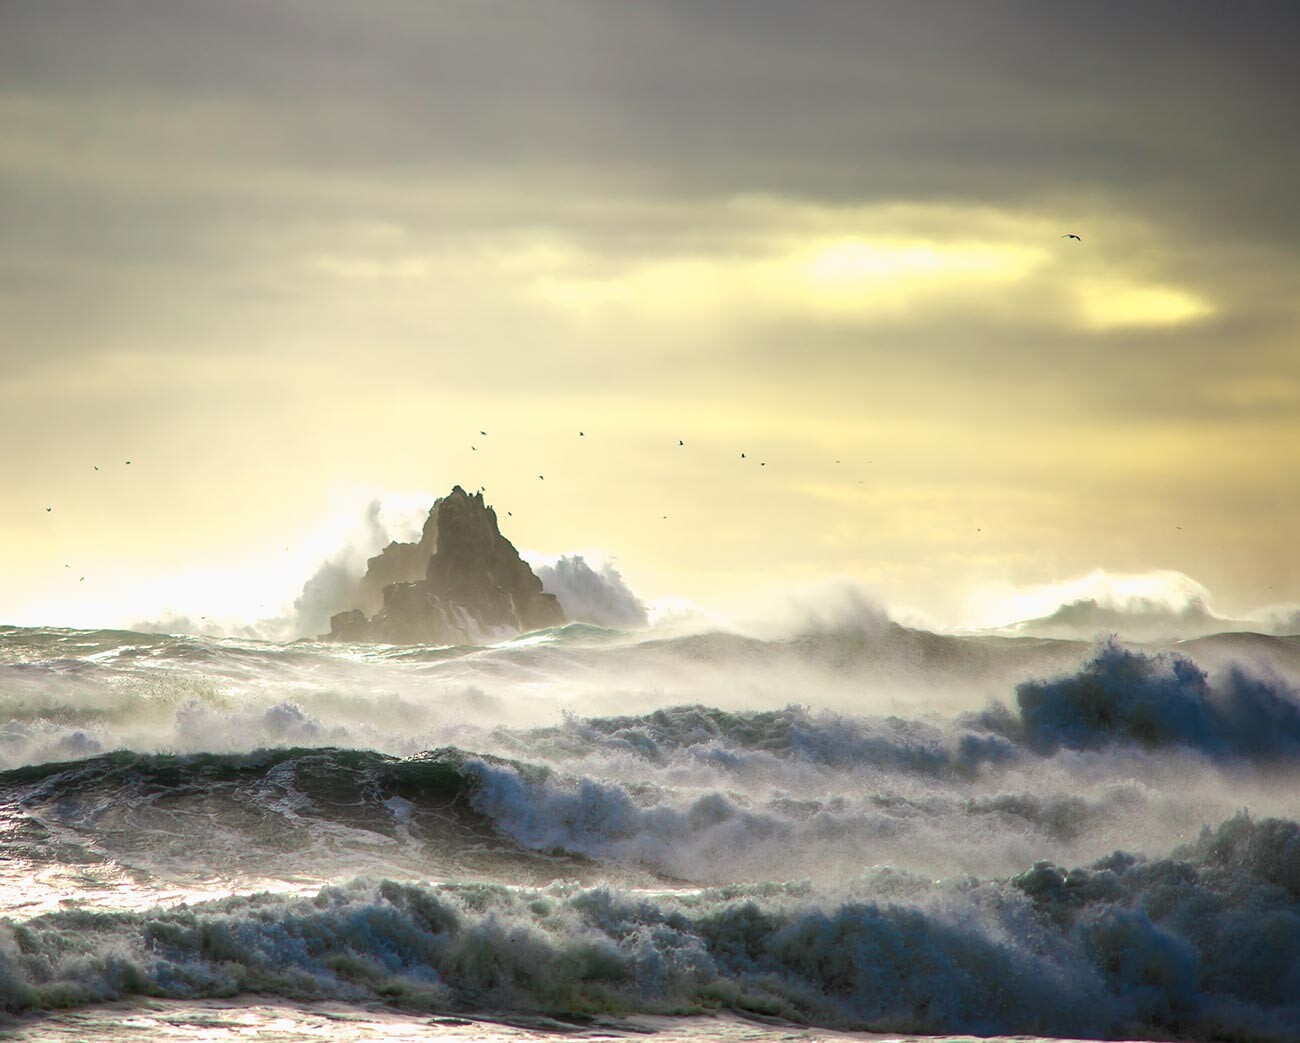 「穏やかでない太平洋」－エフゲニー・ウラジミロフ。「魔法の環境」カテゴリーでもうひとつのカムチャツカ州の写真が受賞した